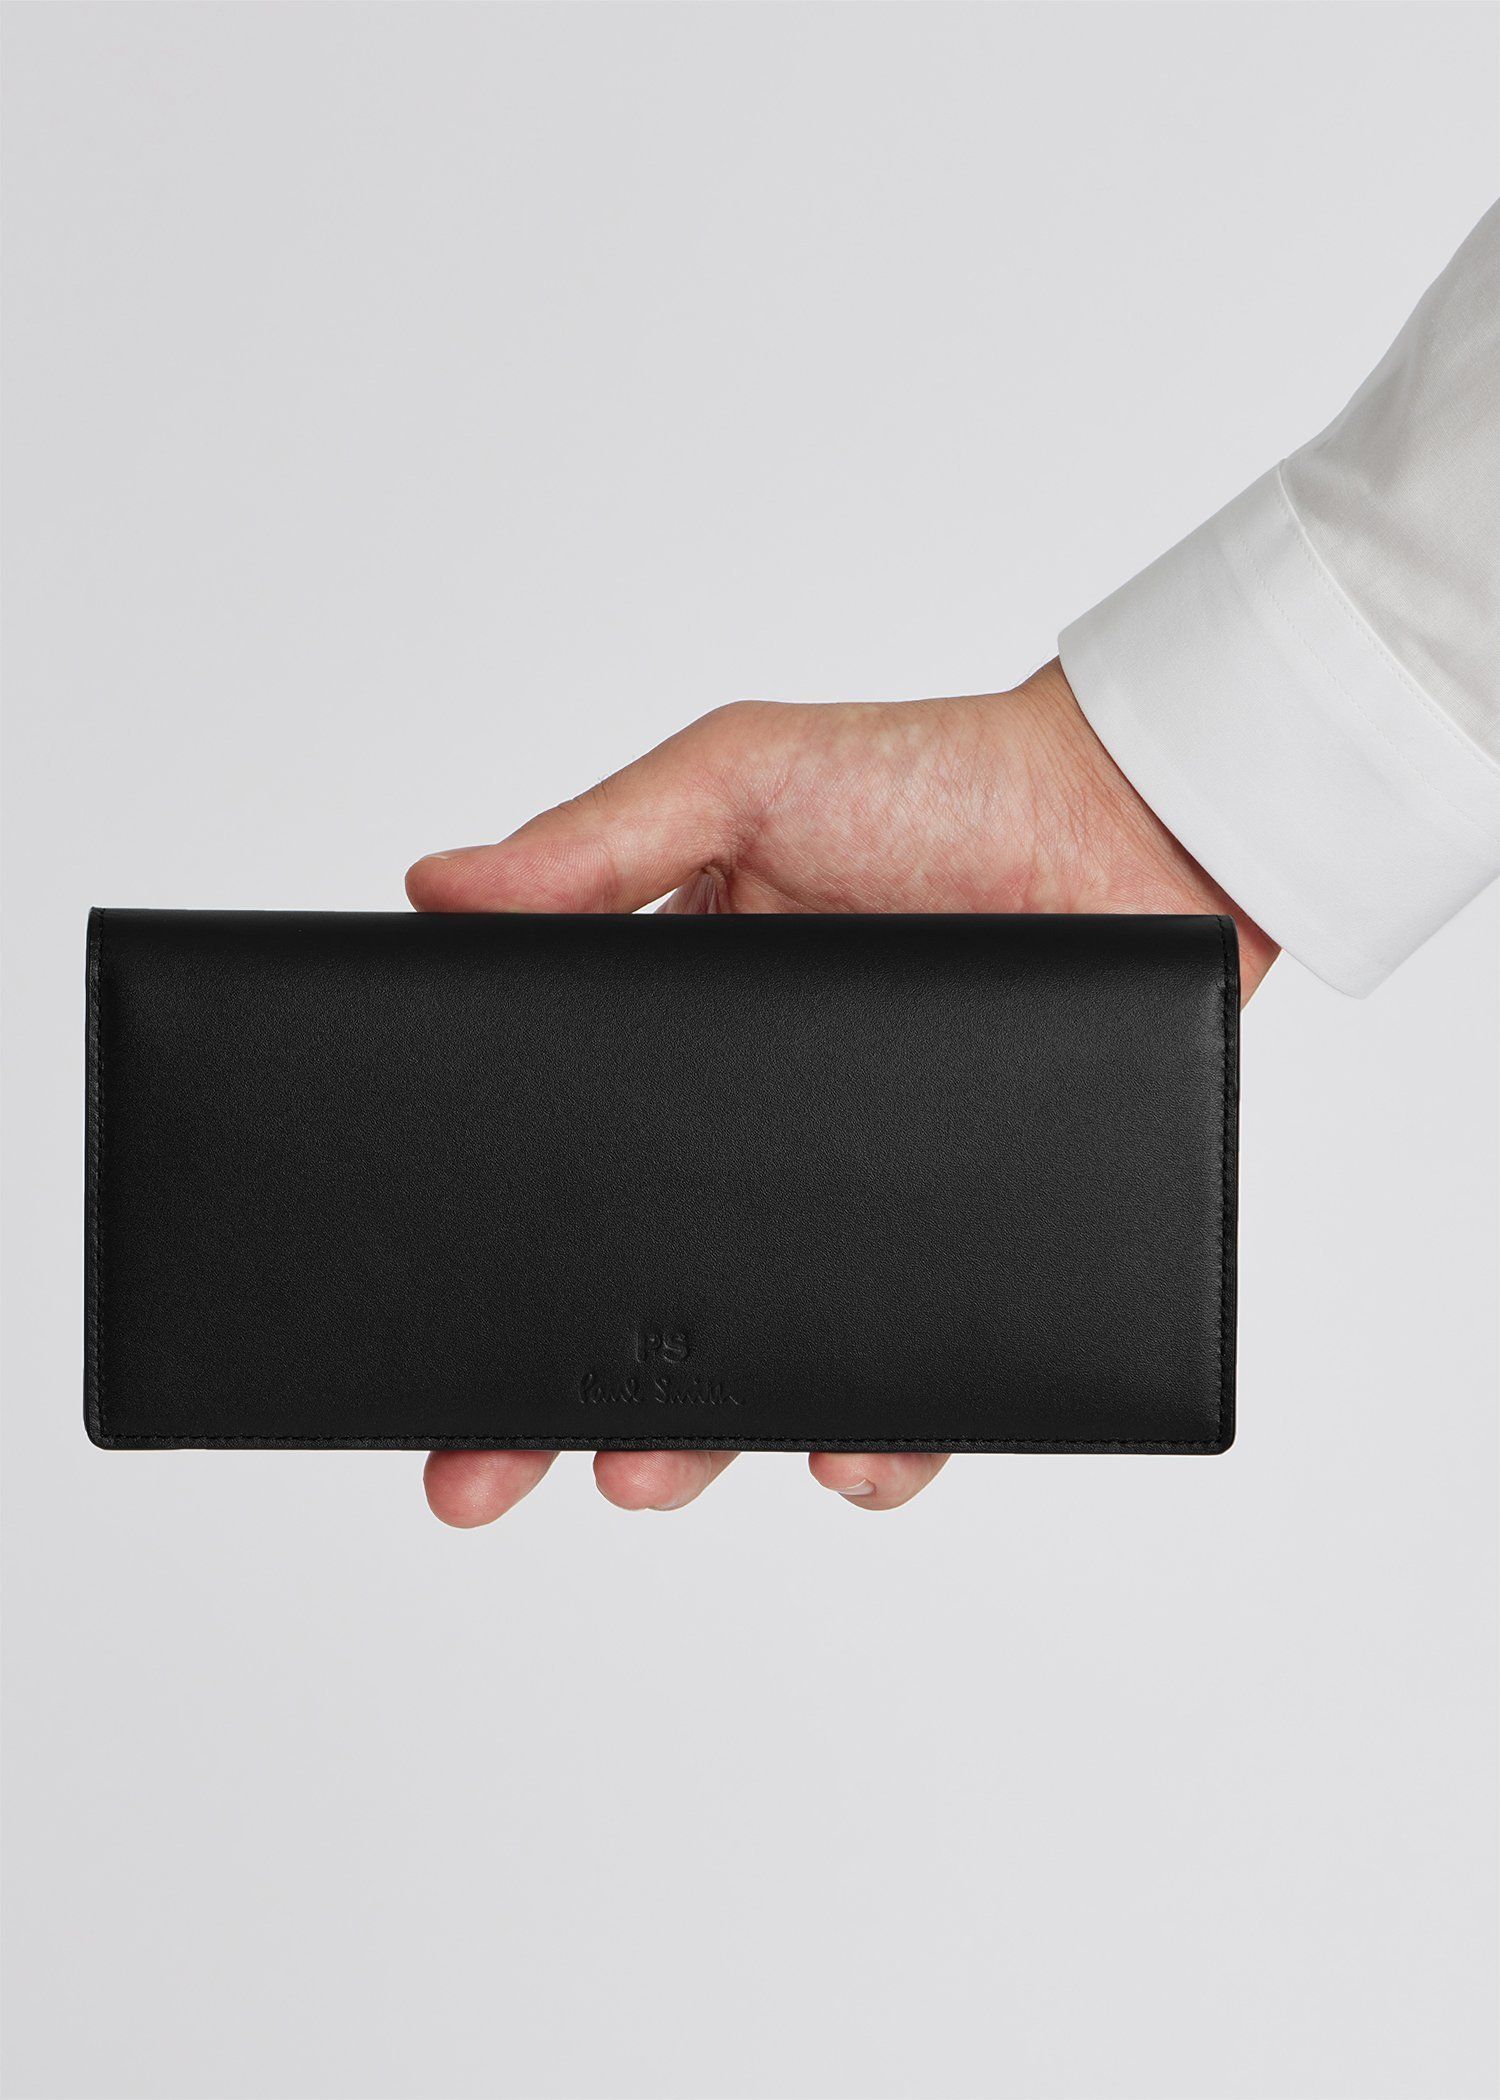 おいご市場【新品】ポールスミス✨PSレターズ 折り財布 折財布 コンパクト財布 ブラック